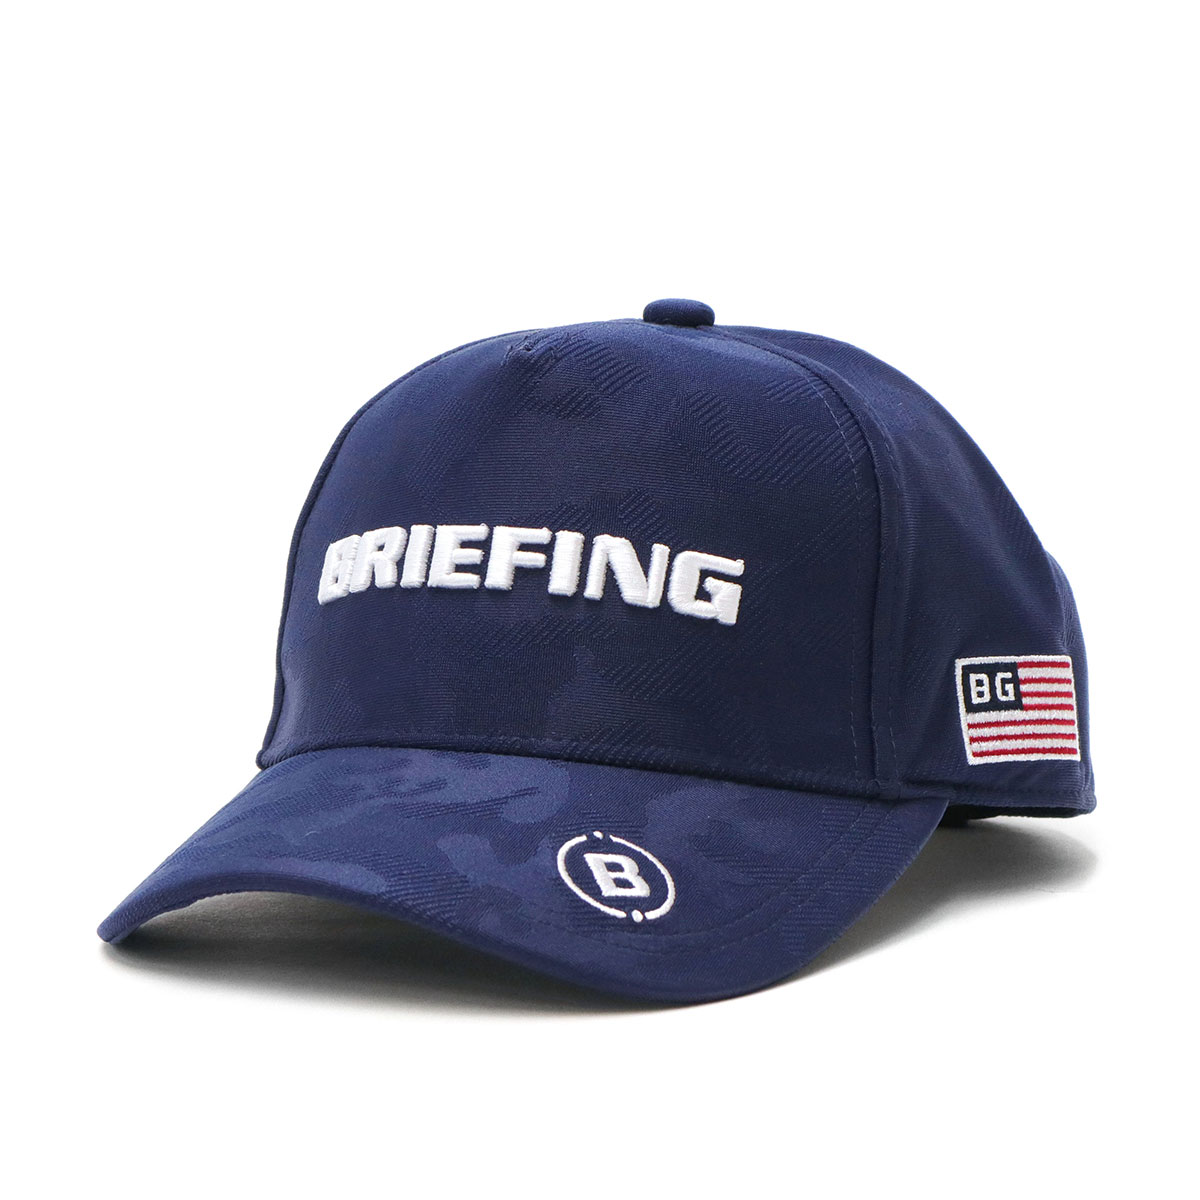 日本正規品 ブリーフィング ゴルフ キャップ BRIEFING GOLF URBAN COLLECTION MENS CAMO JQ CAP 帽子  ゴルフキャップ メンズ BRG223M82